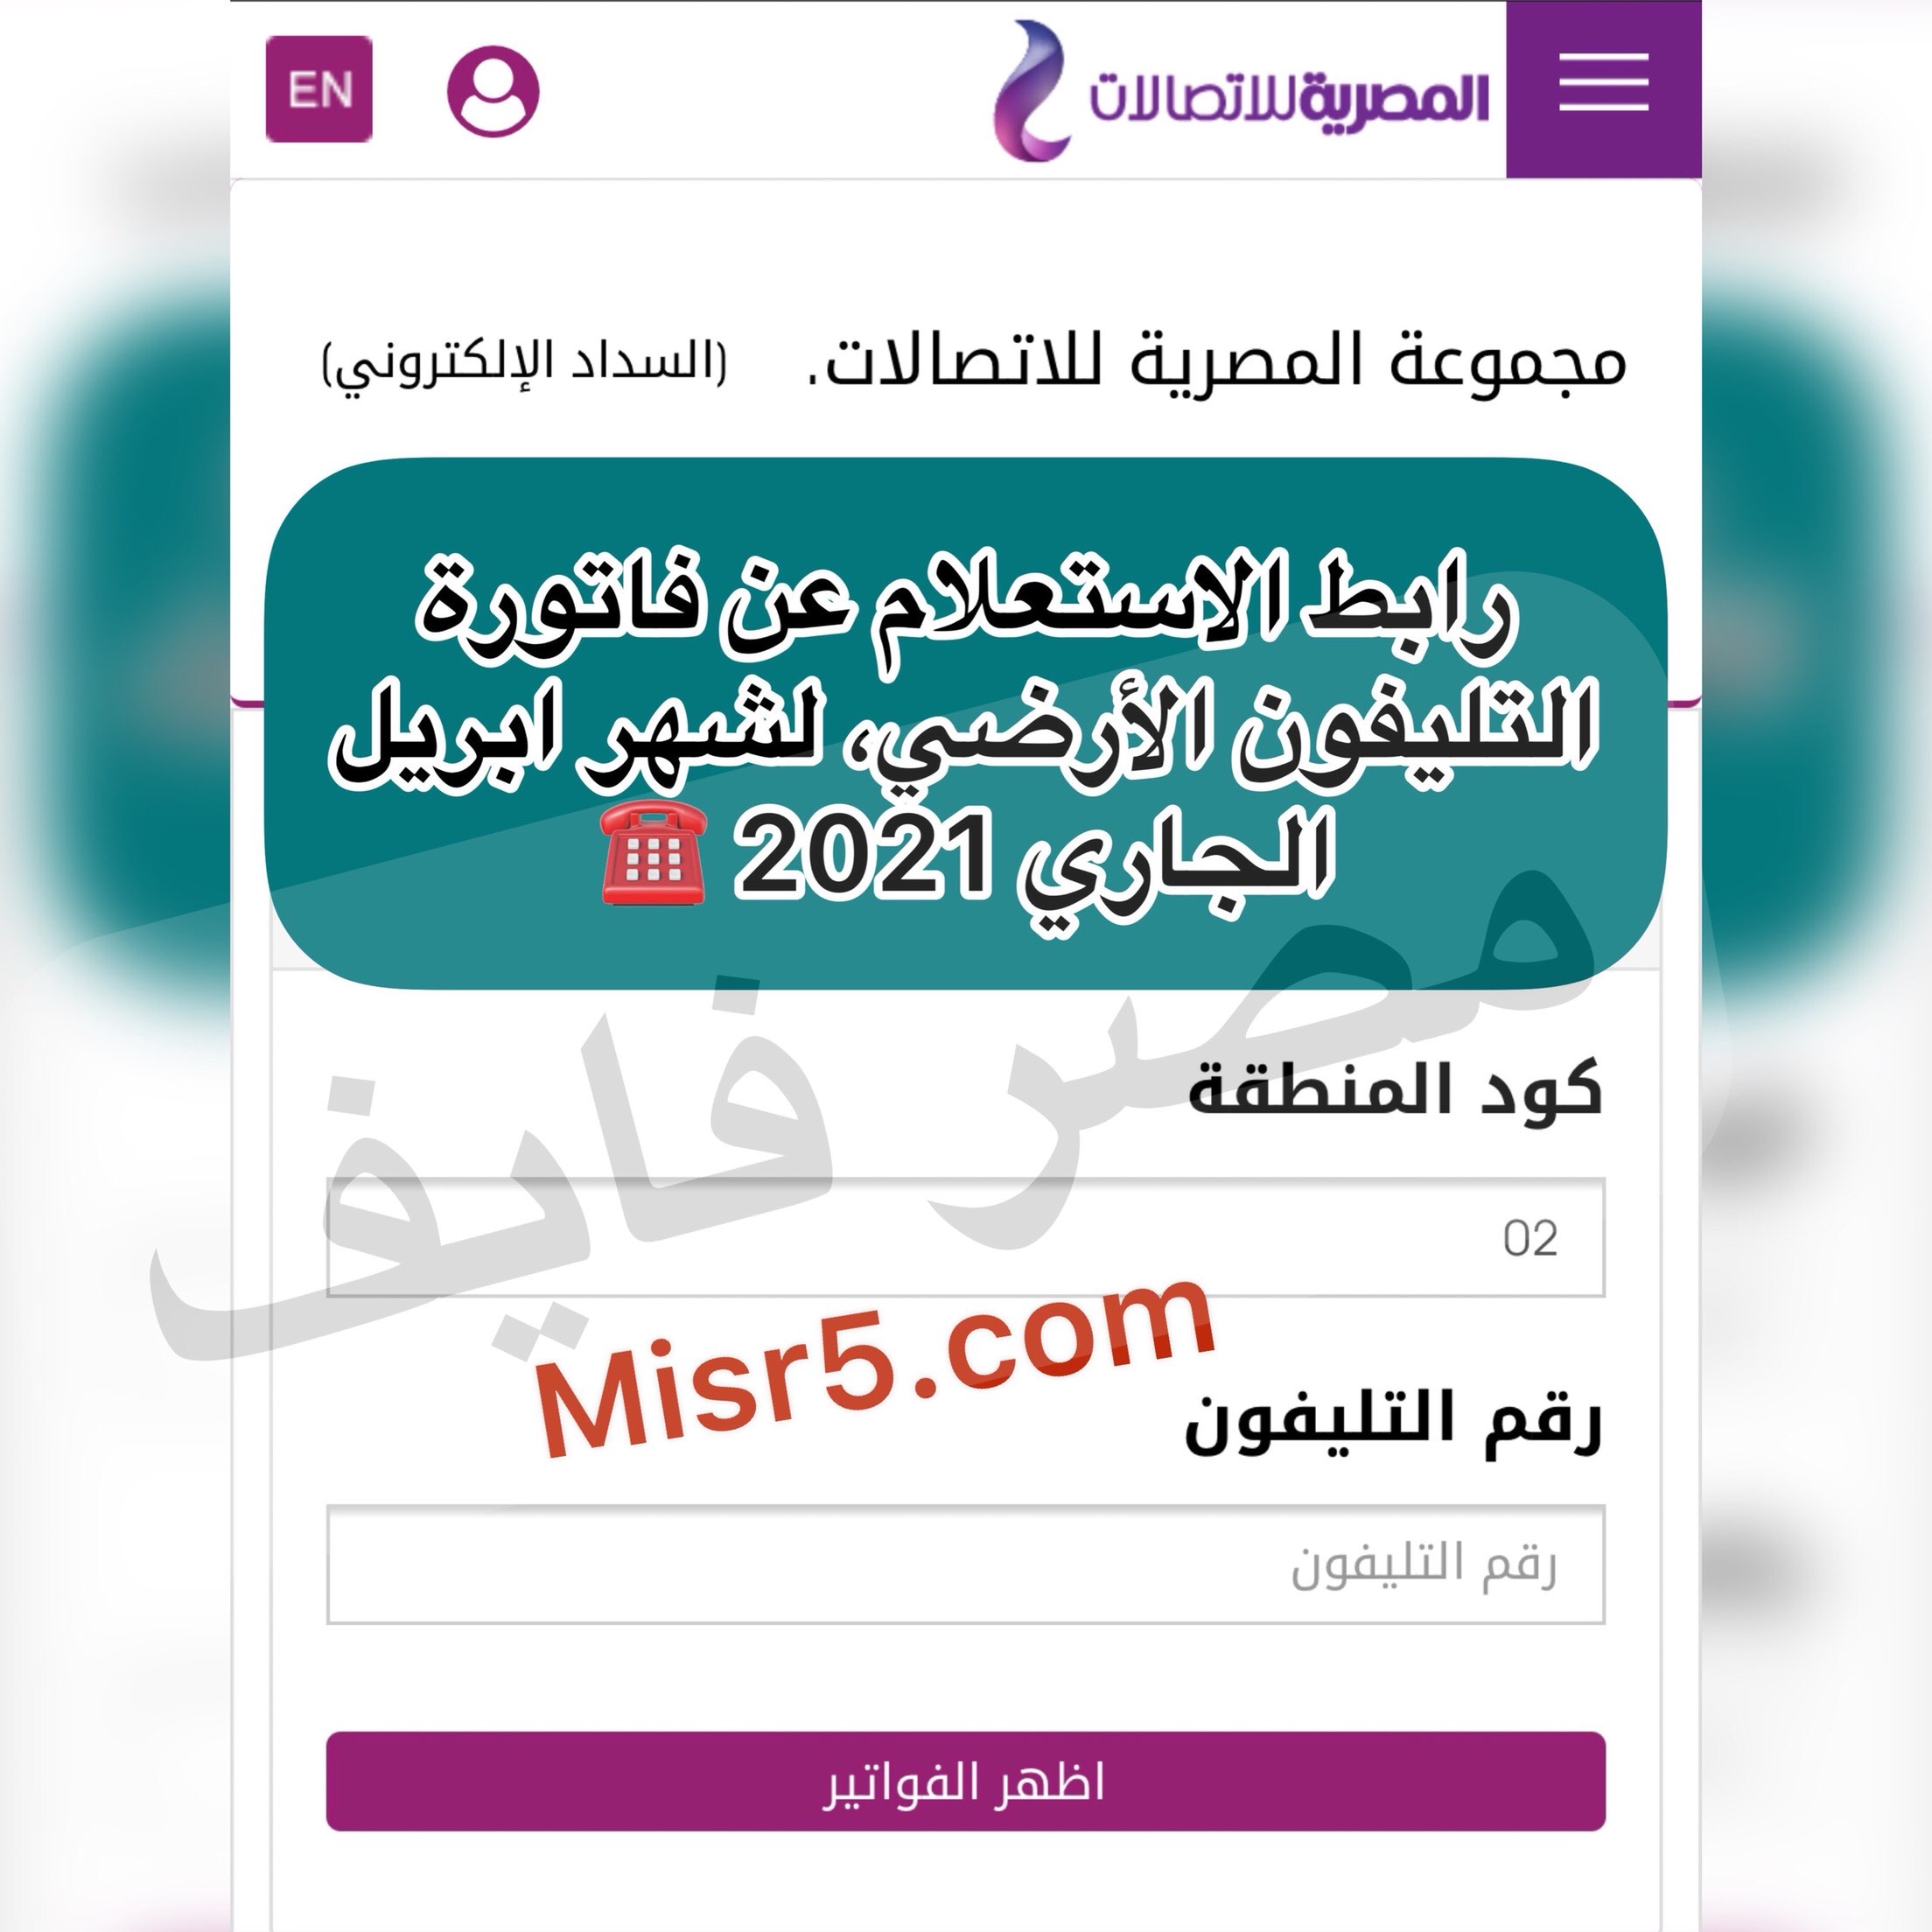 أعرف وسدد فاتورة التليفون الأرضي المصرية للاتصالات ابريل 2021 عبر الإنترنت